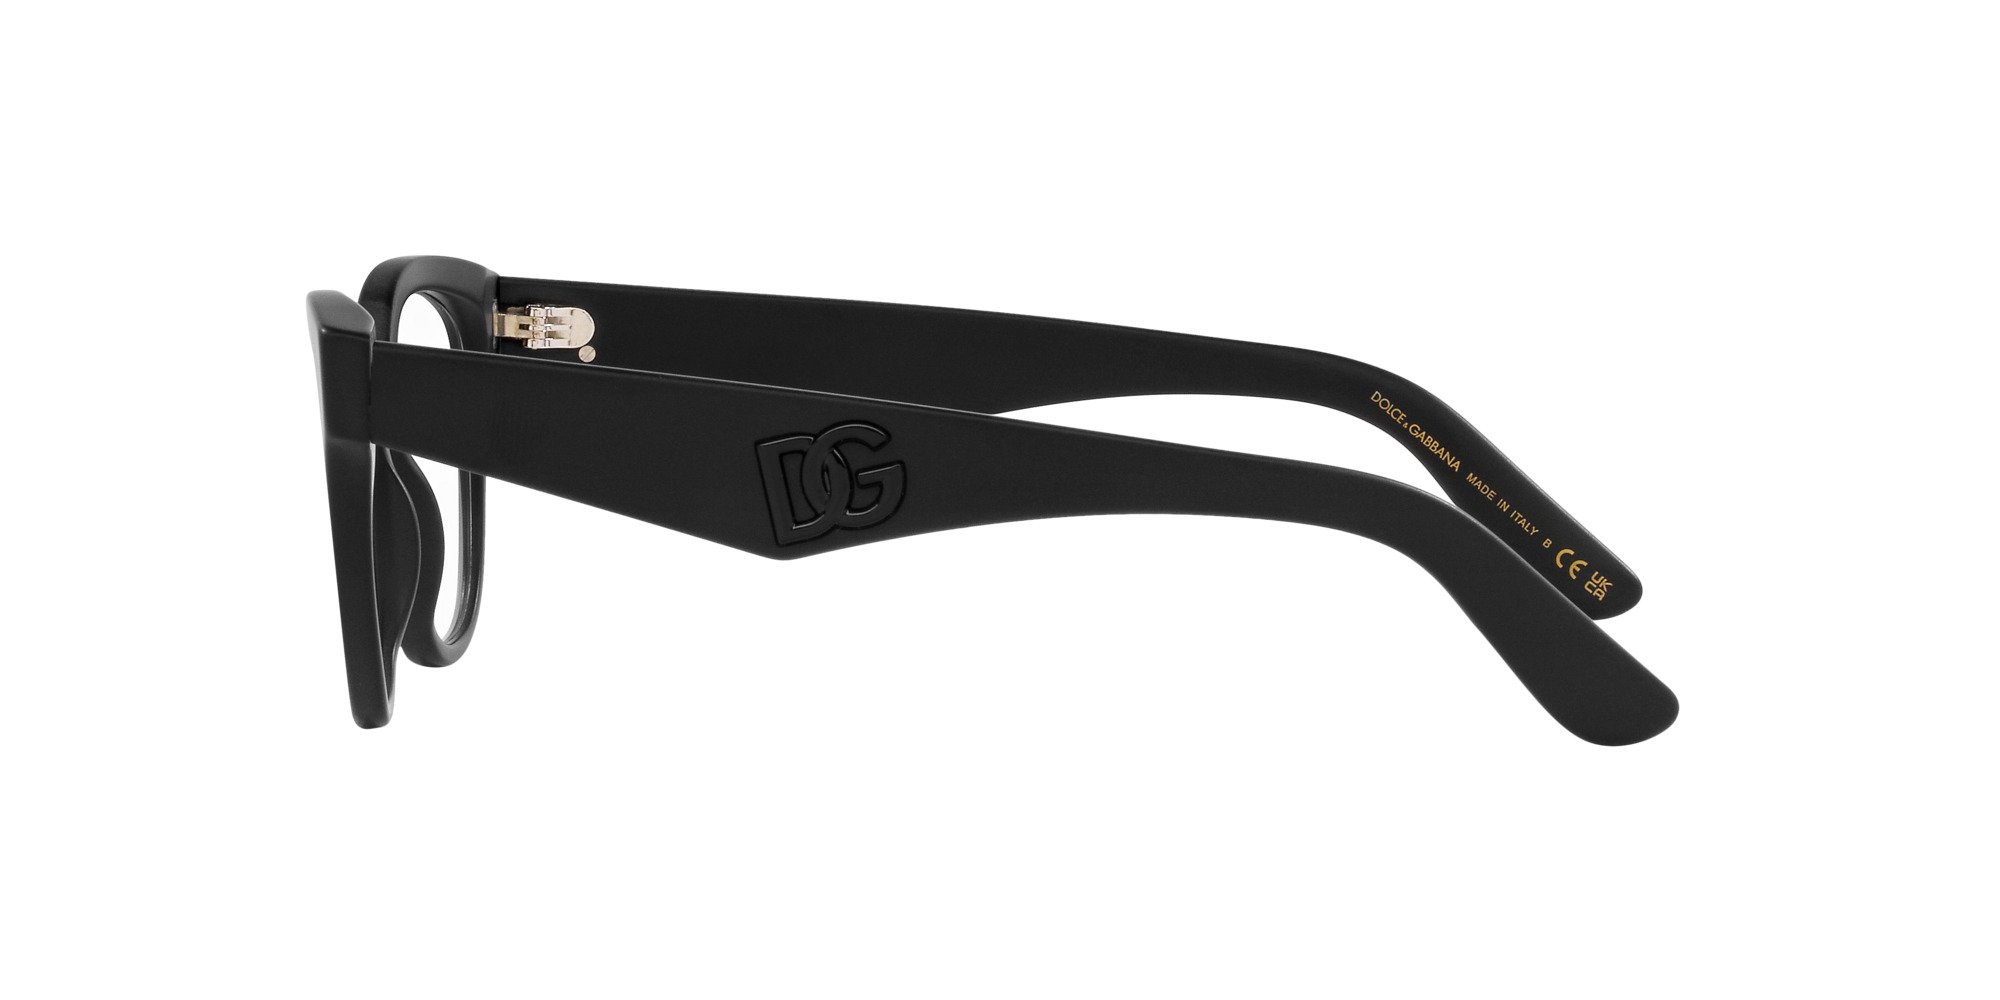 Das Bild zeigt die Korrektionsbrille DG3371 2525 von der Marke D&G in matt schwarz.